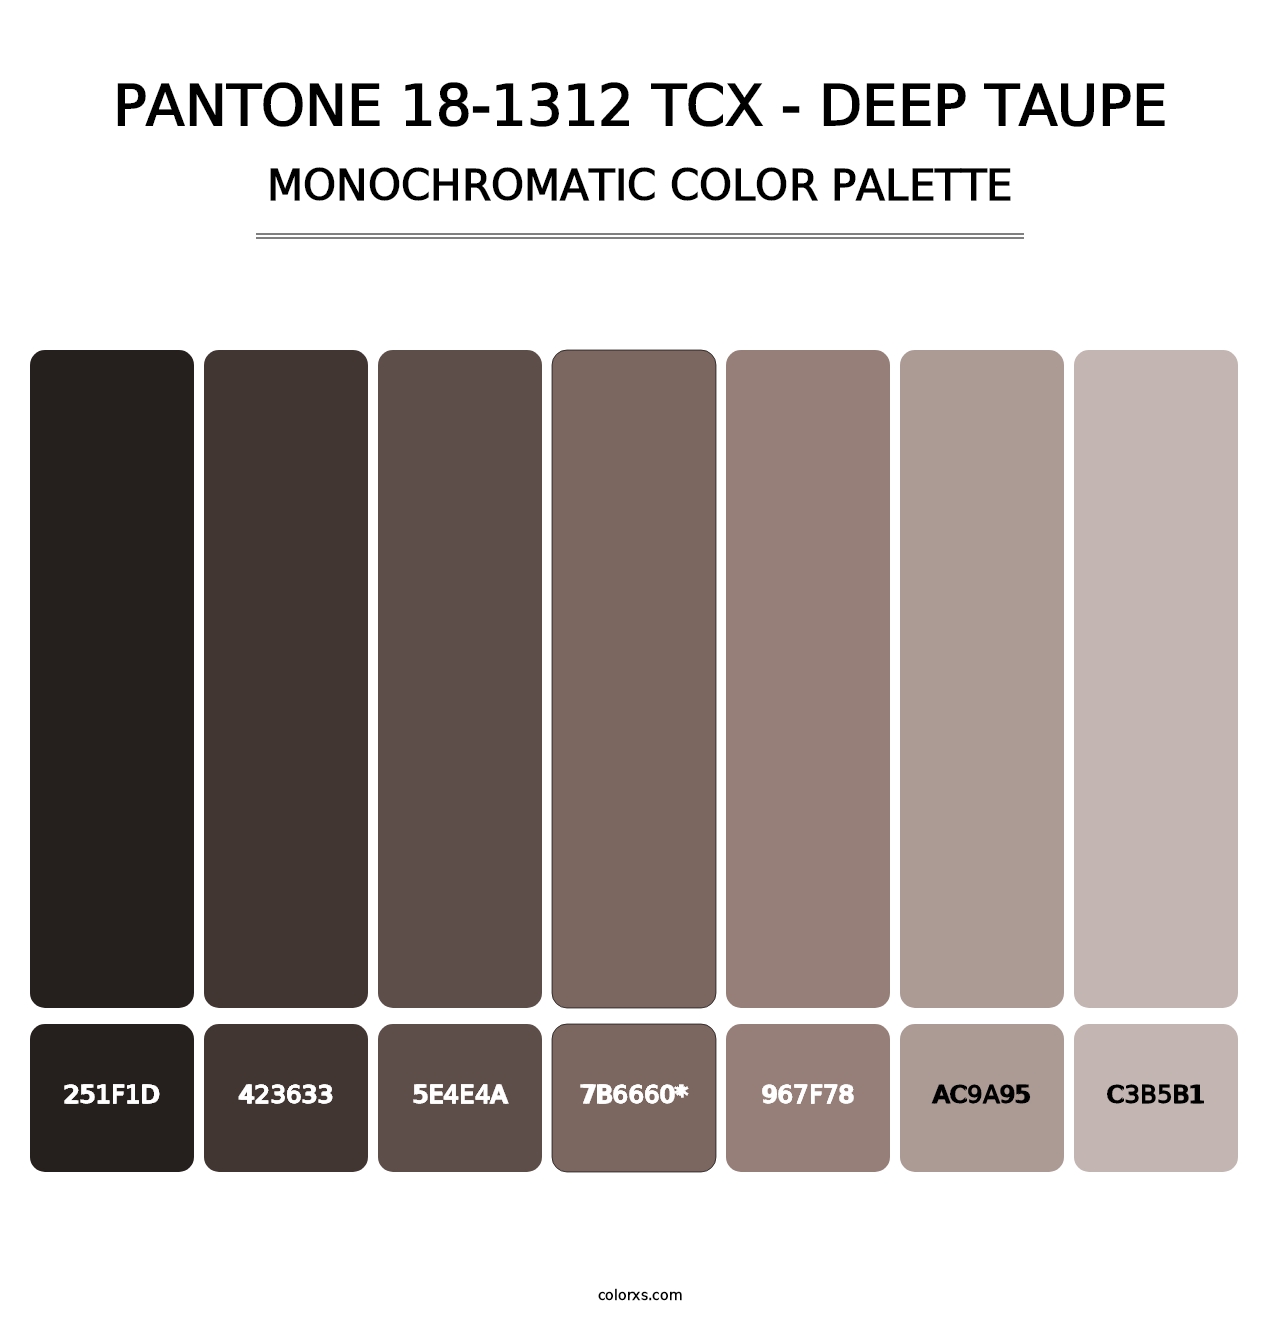 PANTONE 18-1312 TCX - Deep Taupe - Monochromatic Color Palette